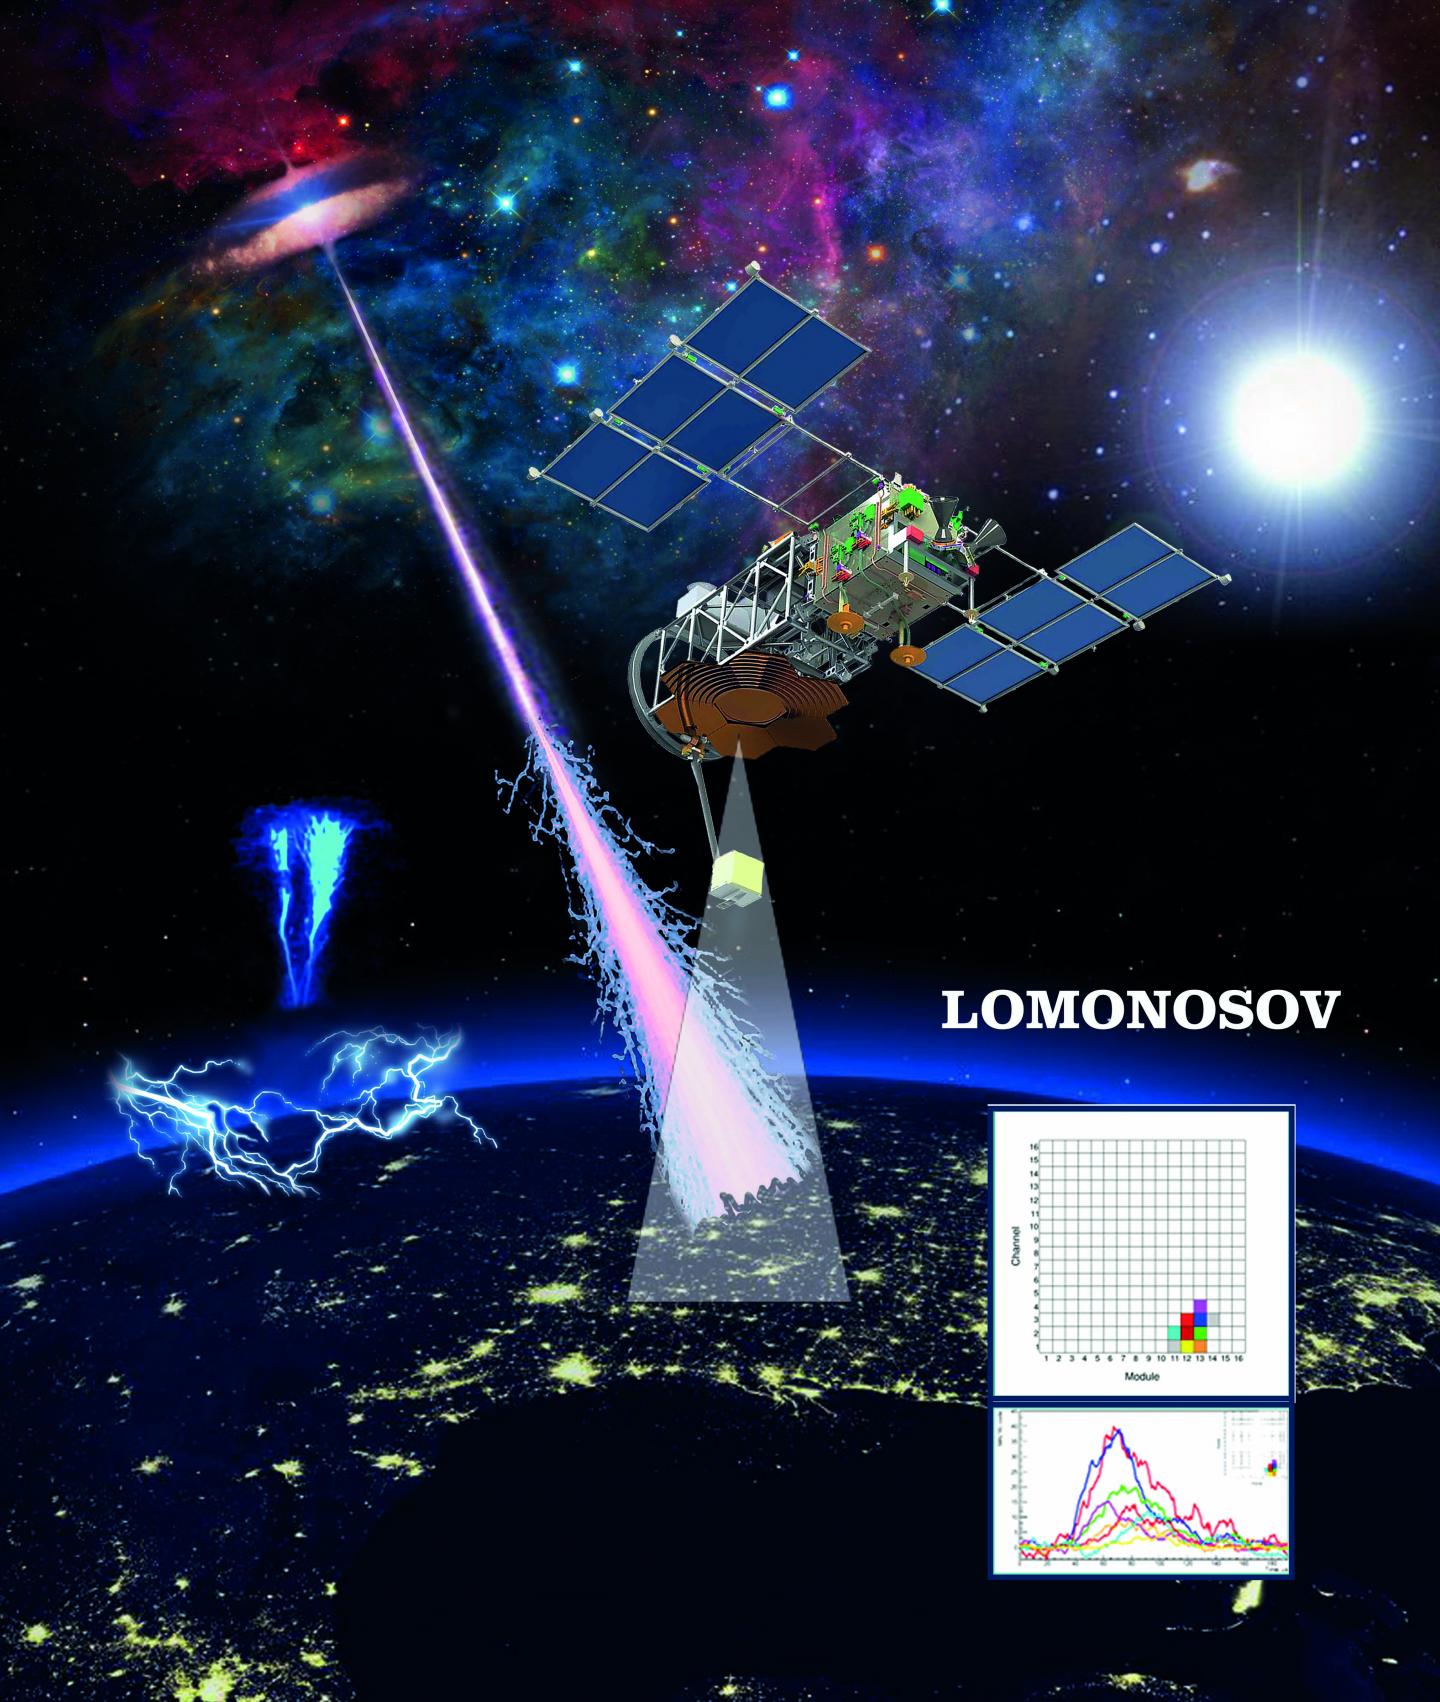 Lomonosov Spacecraft